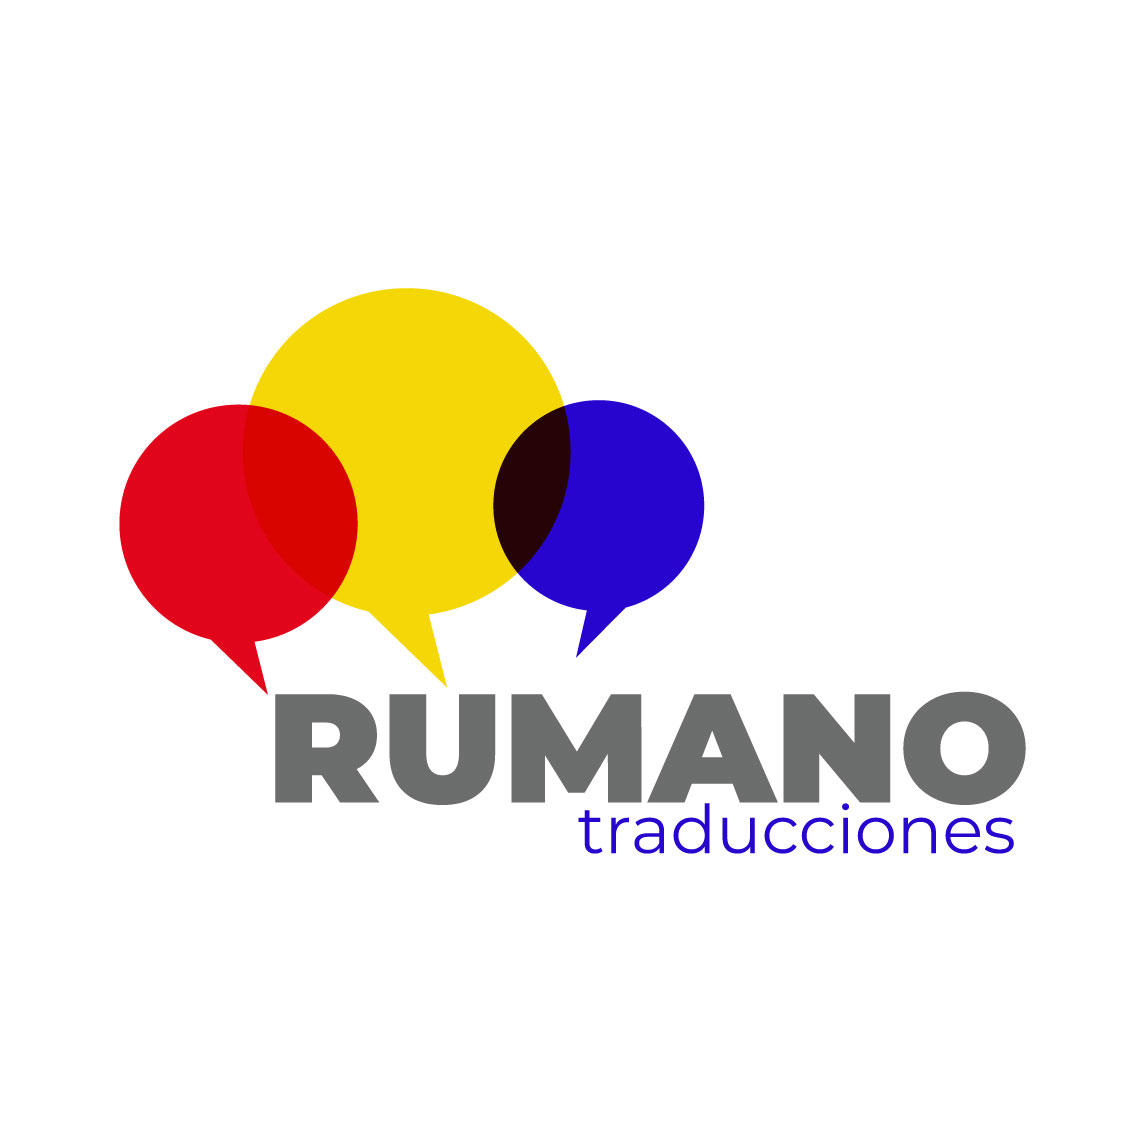 Traducciones Juradas Rumano Logo